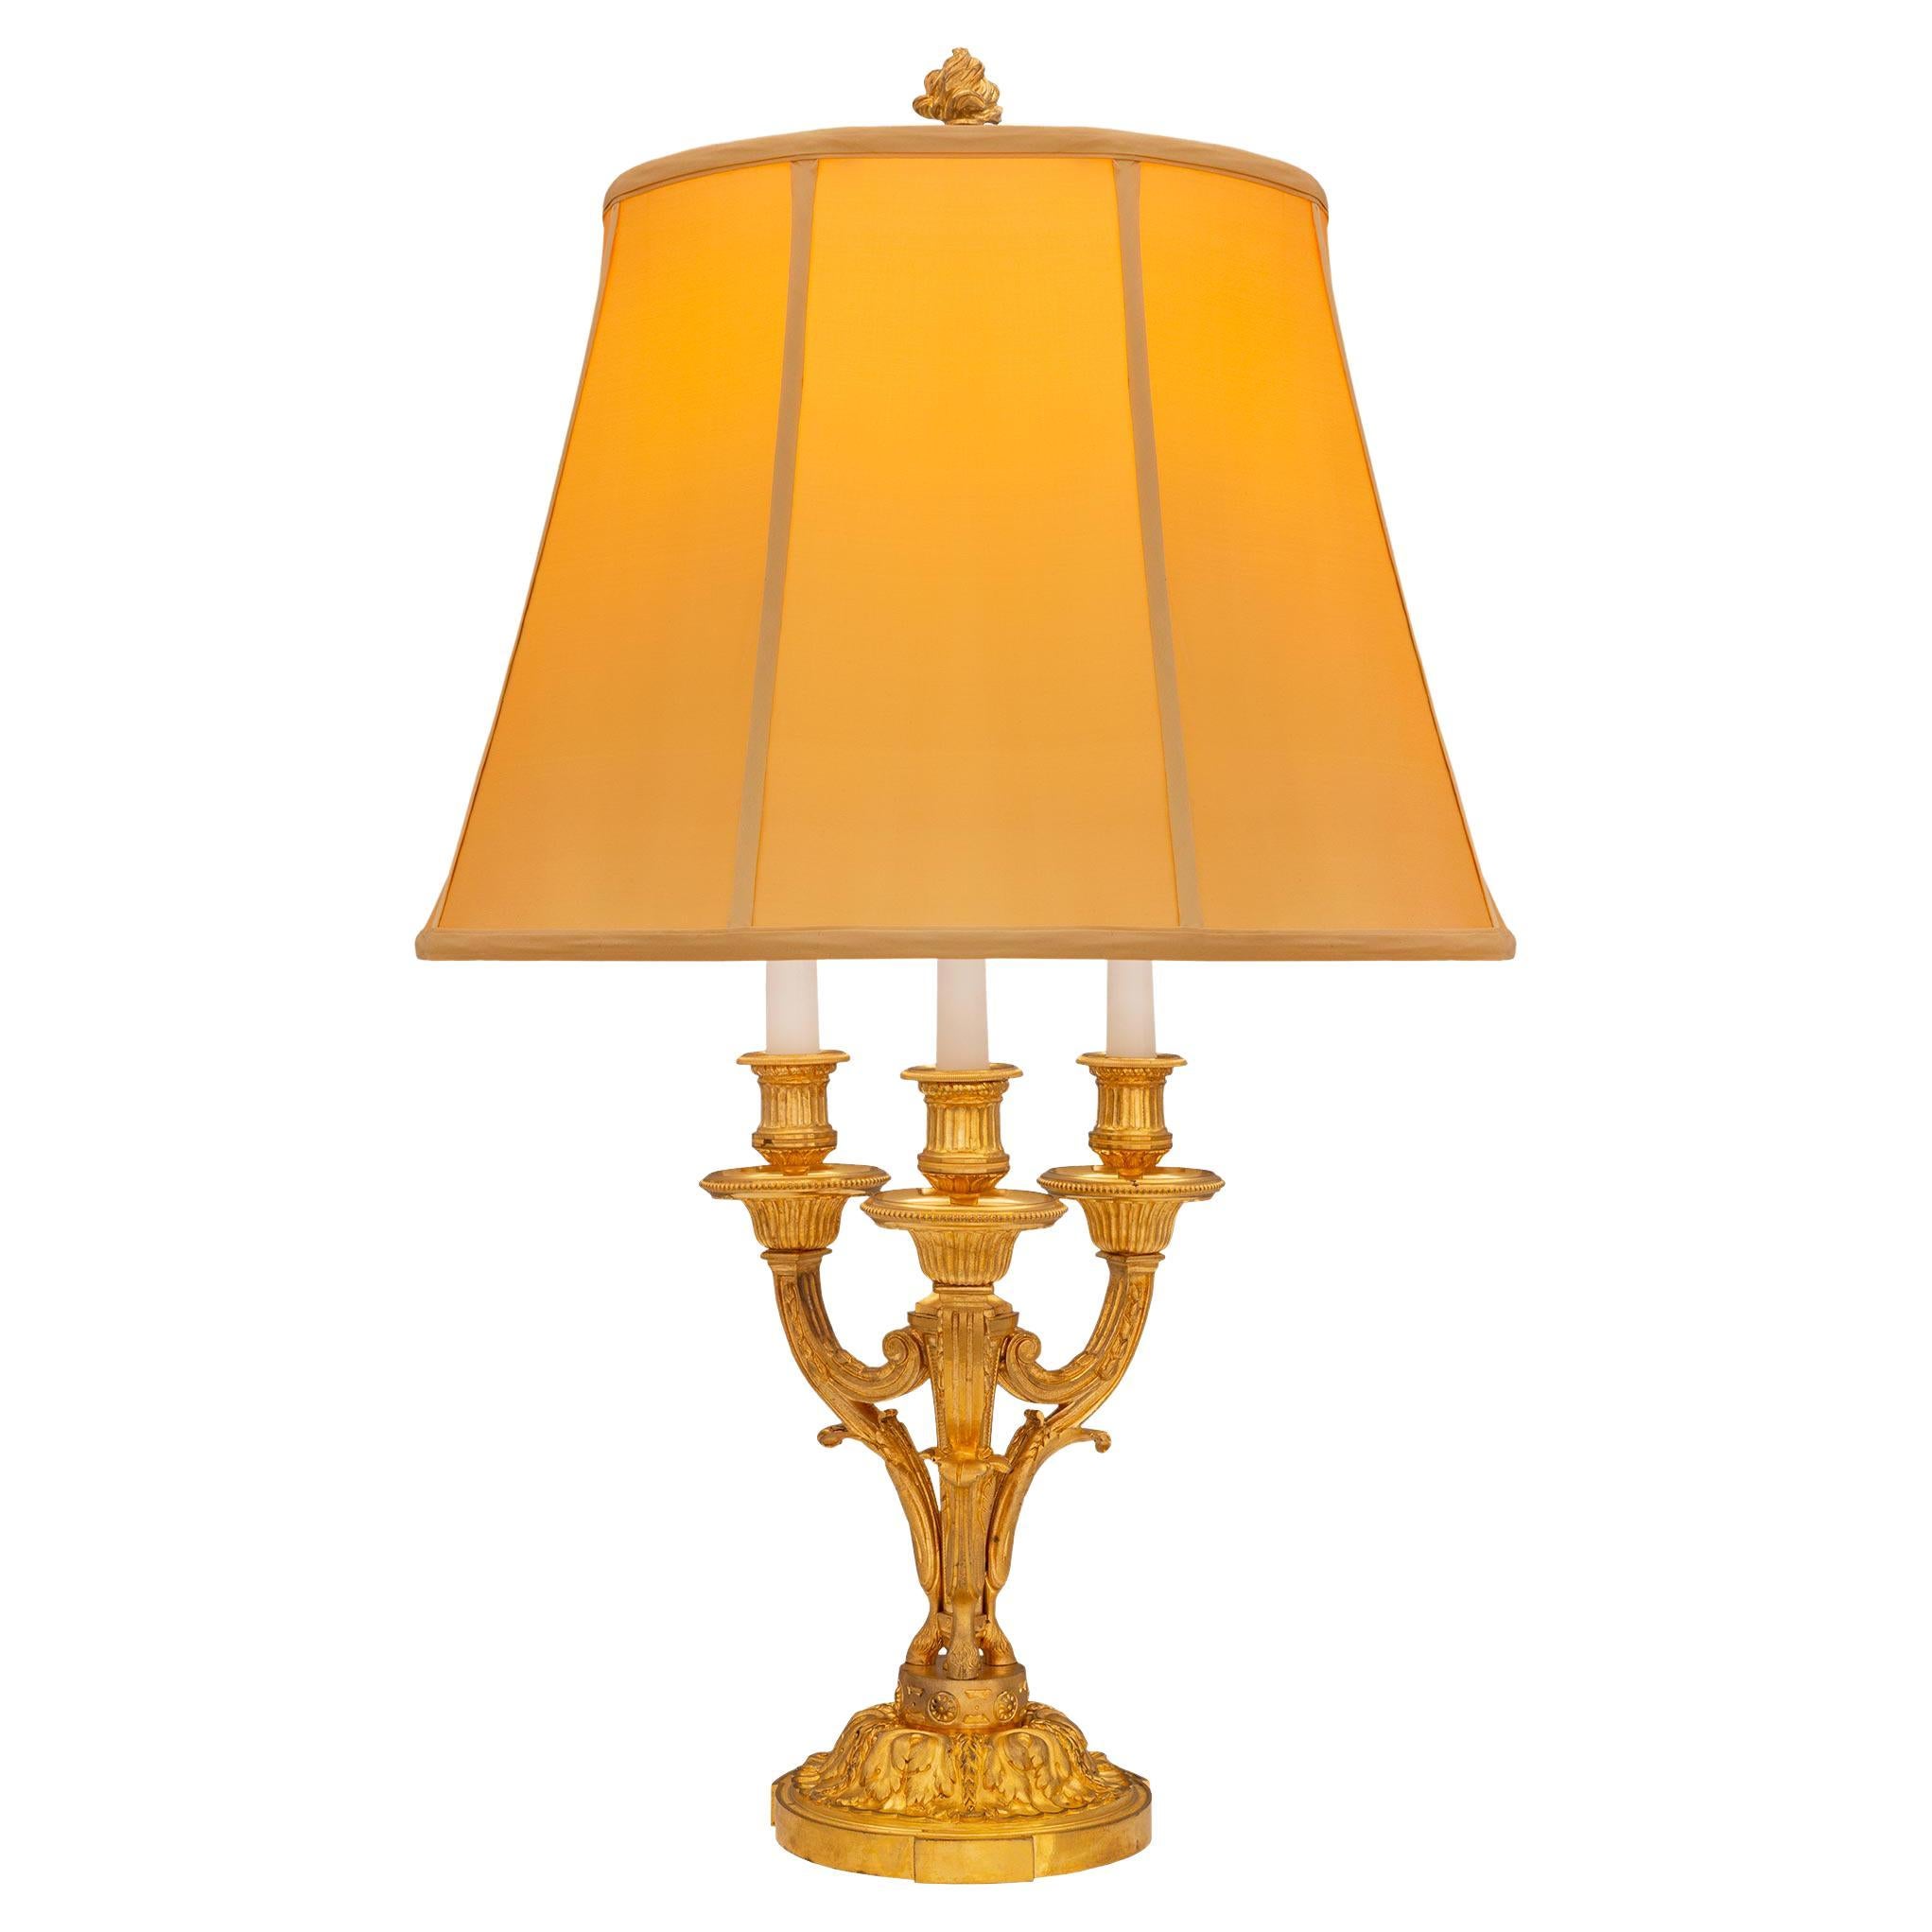 Lampe française du XIXe siècle, style Louis XVI, en bronze doré